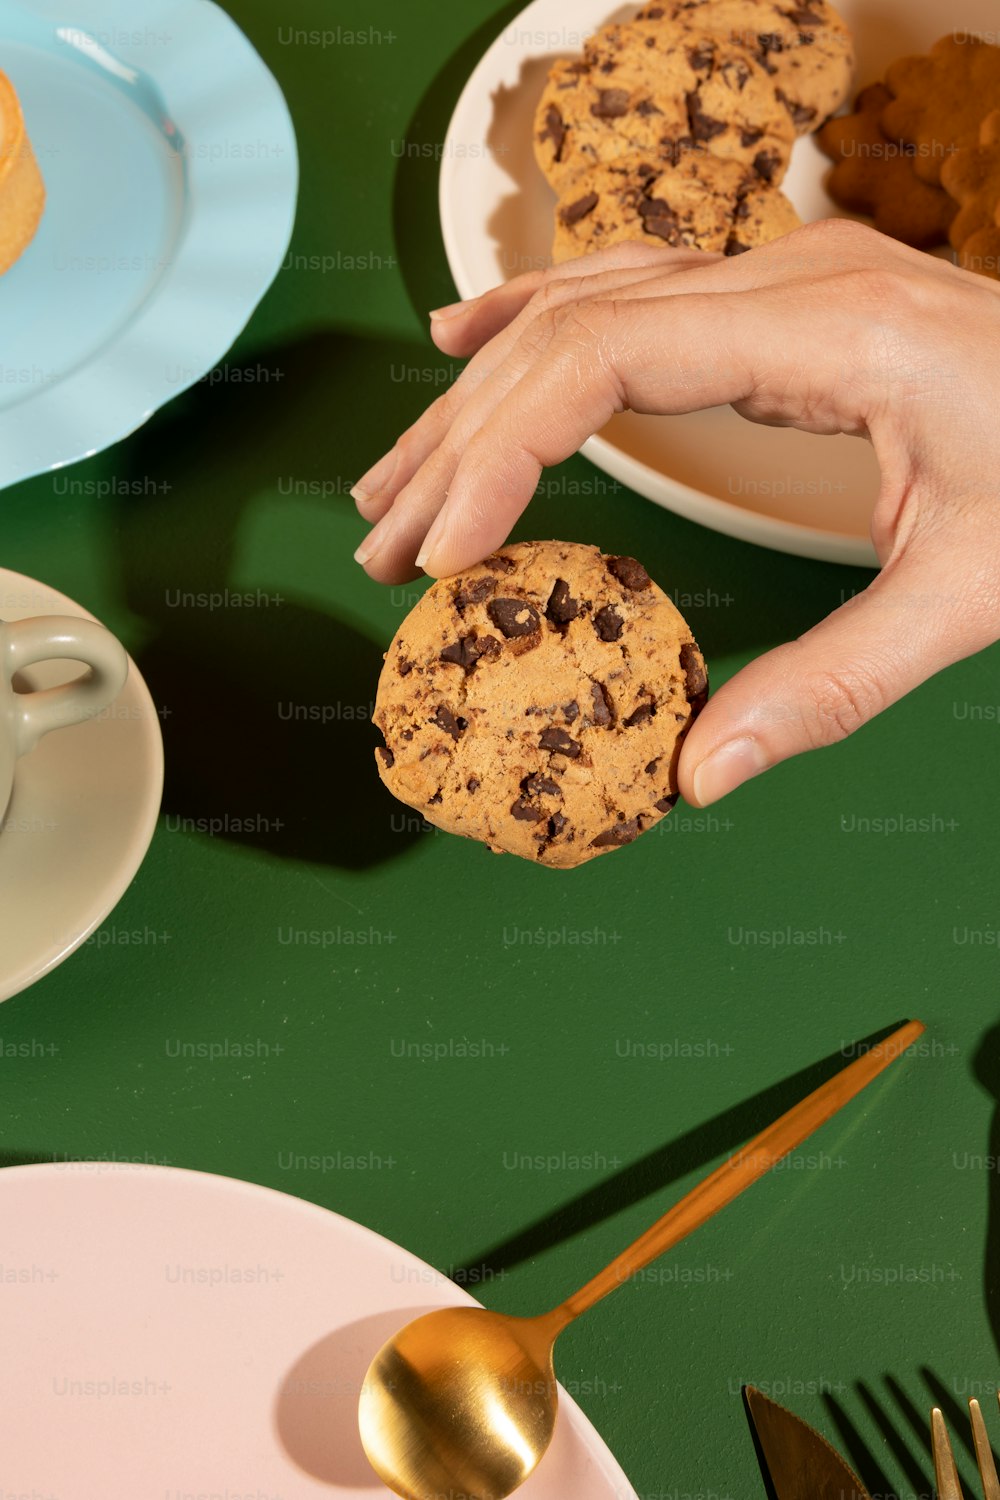 Una persona sosteniendo una galleta frente a un plato de galletas